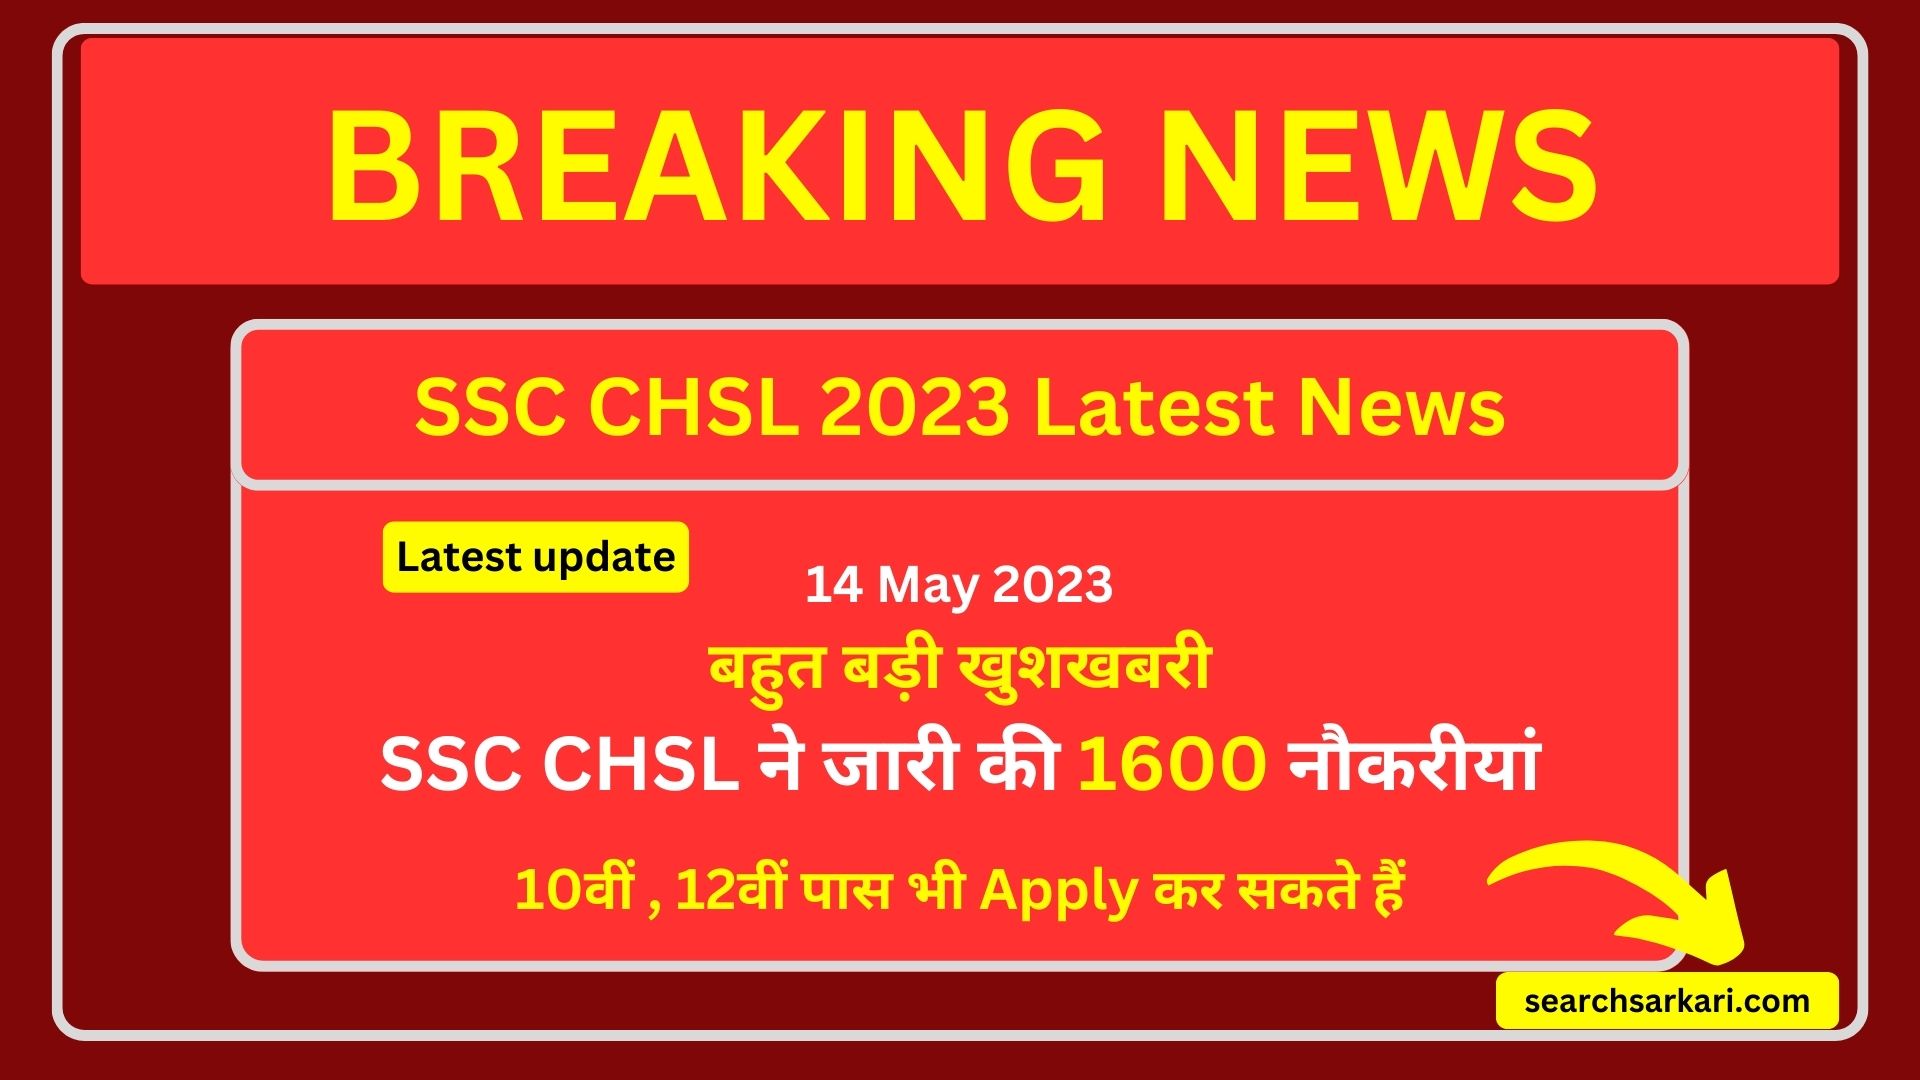 SSC CHSL Last date to apply 2023, SSC CHSL Notification 2023, CHSL Exam 2023